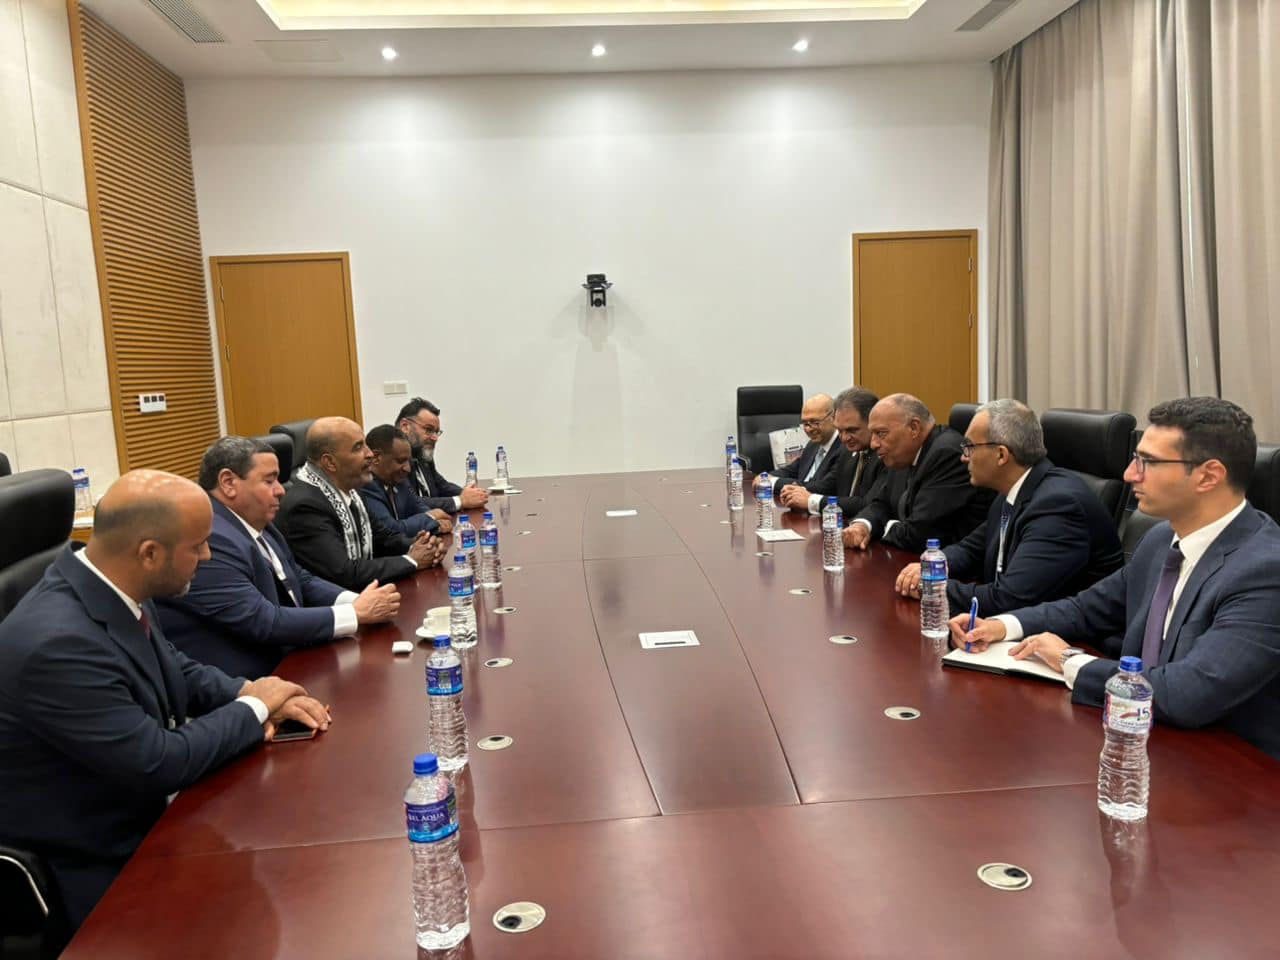 شكري يؤكد حرص مصر على دعم المجلس الرئاسي وتقريب وجهات النظر بين الليبيين.